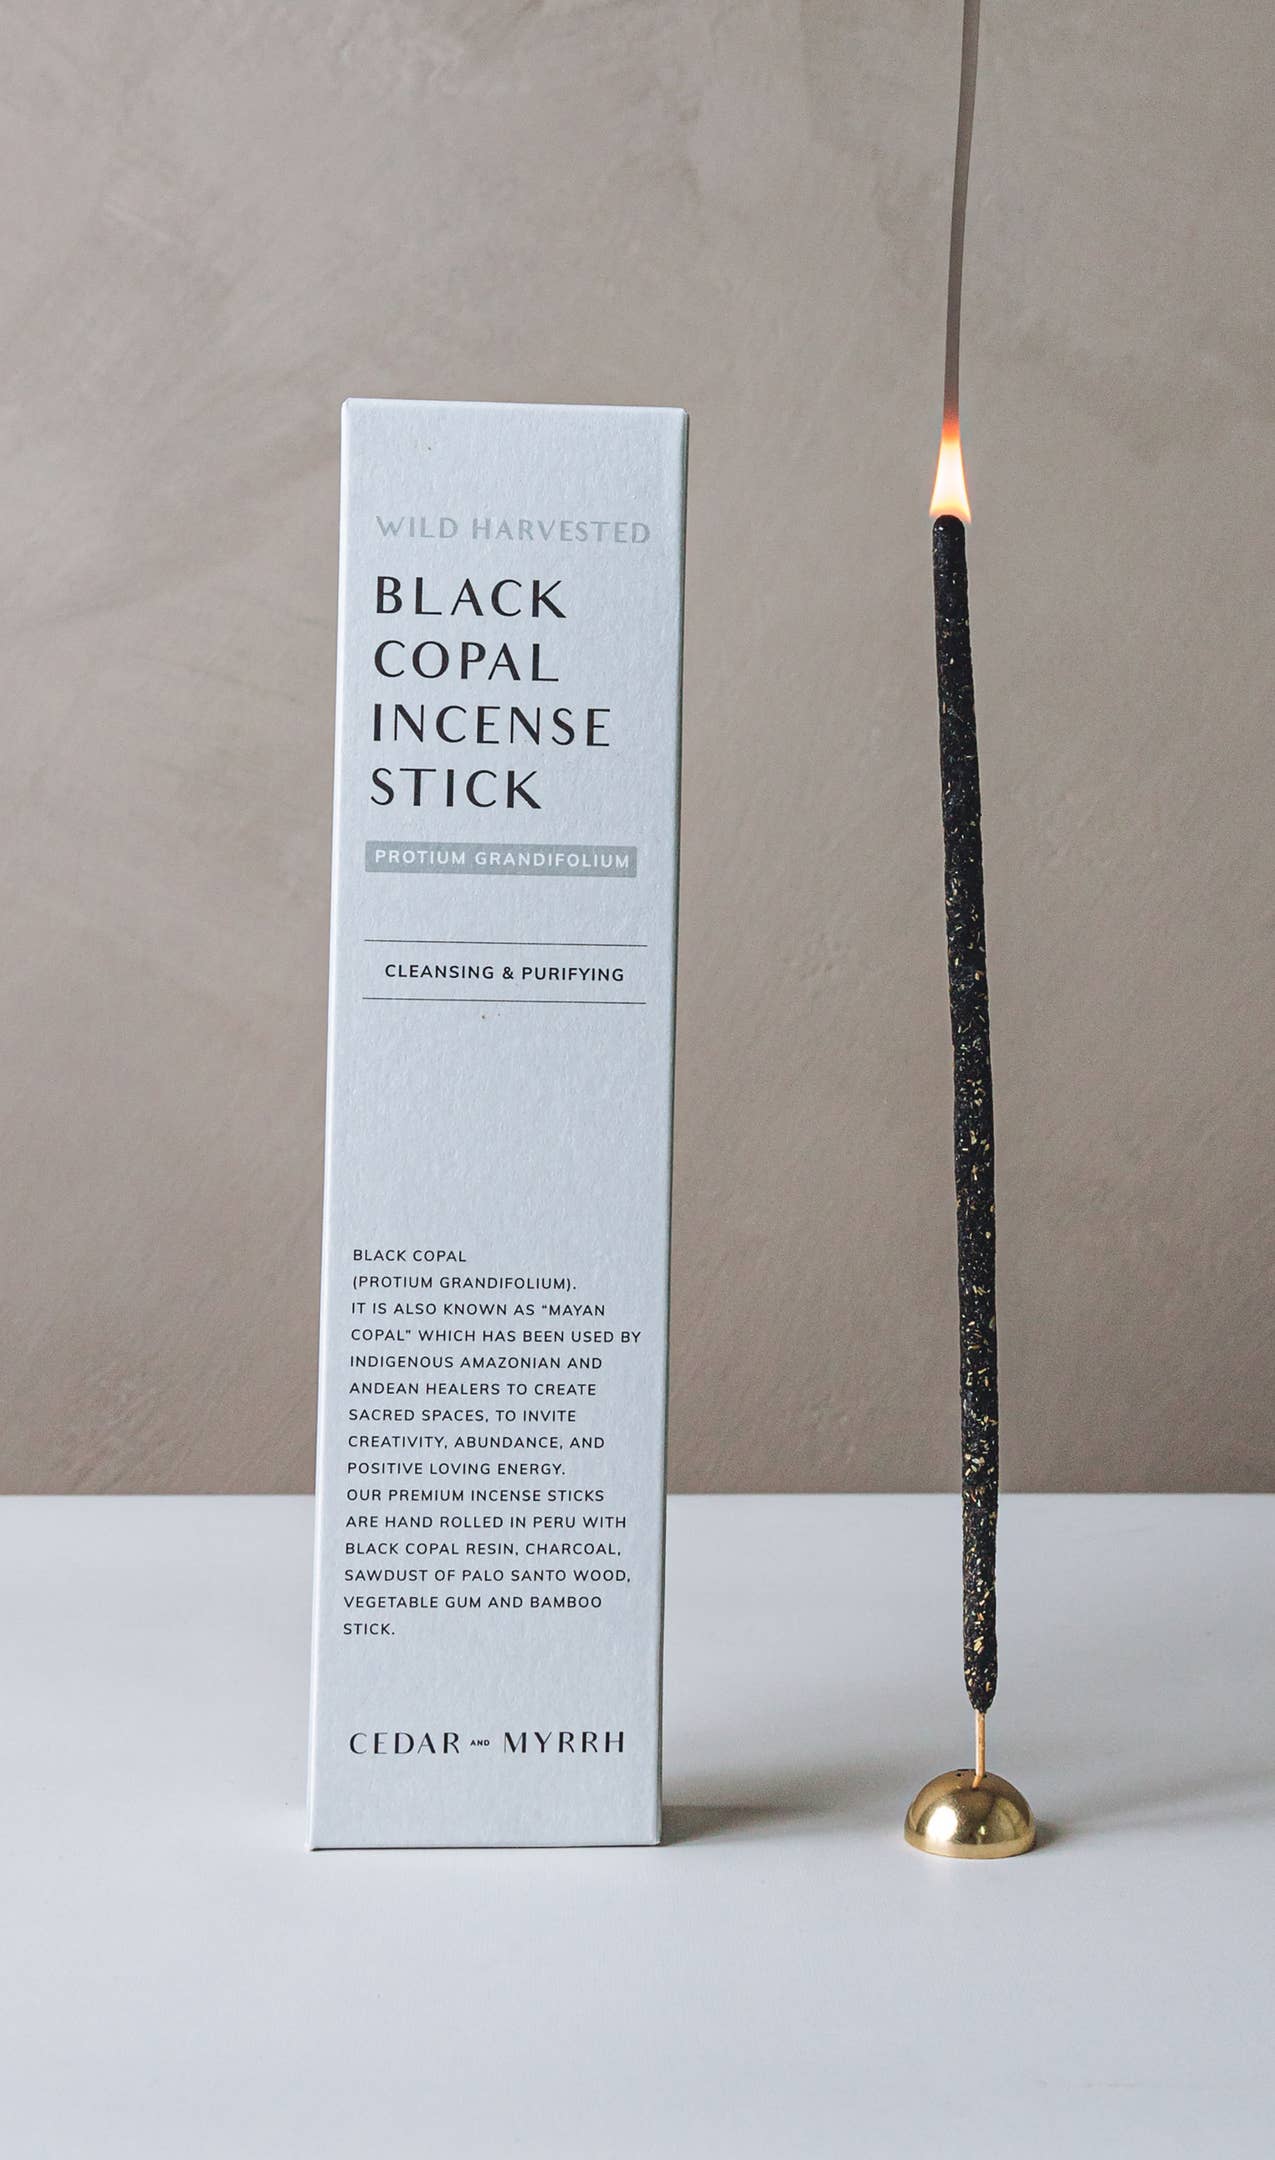 Hand Rolled Black Copal Incense Sticks